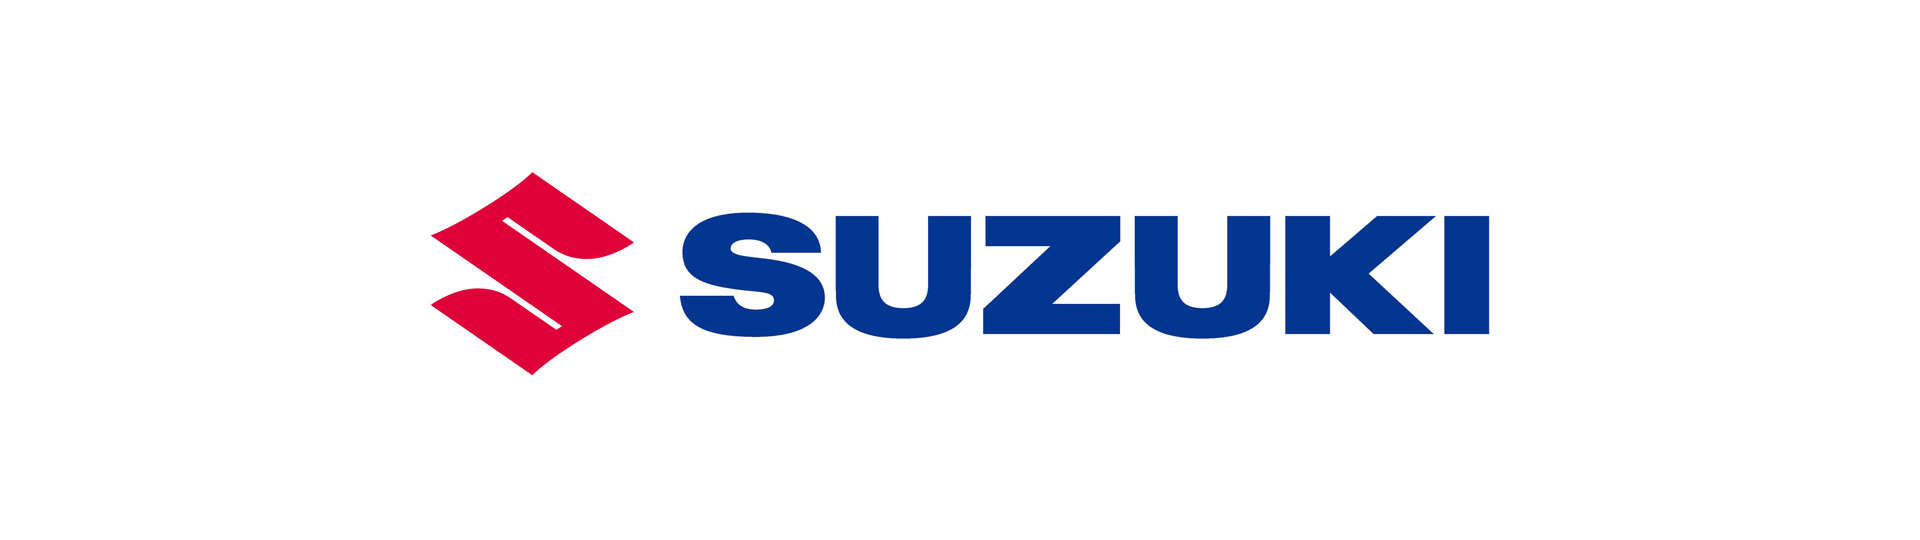 Suzuki Auto bei Churfirstengarage AG René Metzger